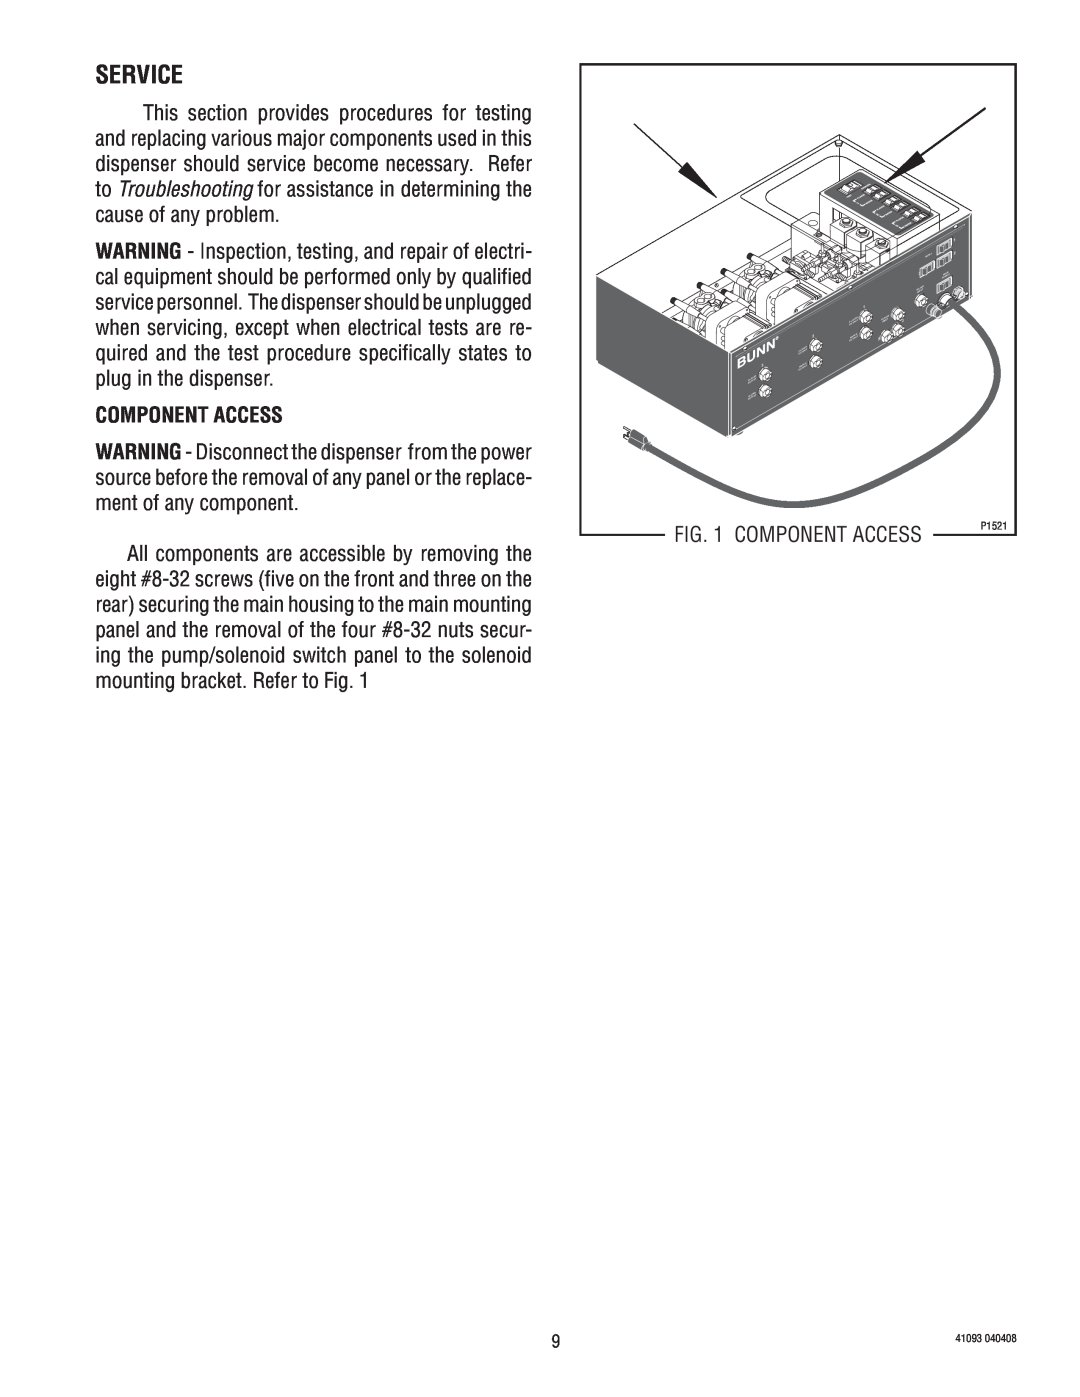 Bunn AFPO-3 SL manual Service, Component Access 